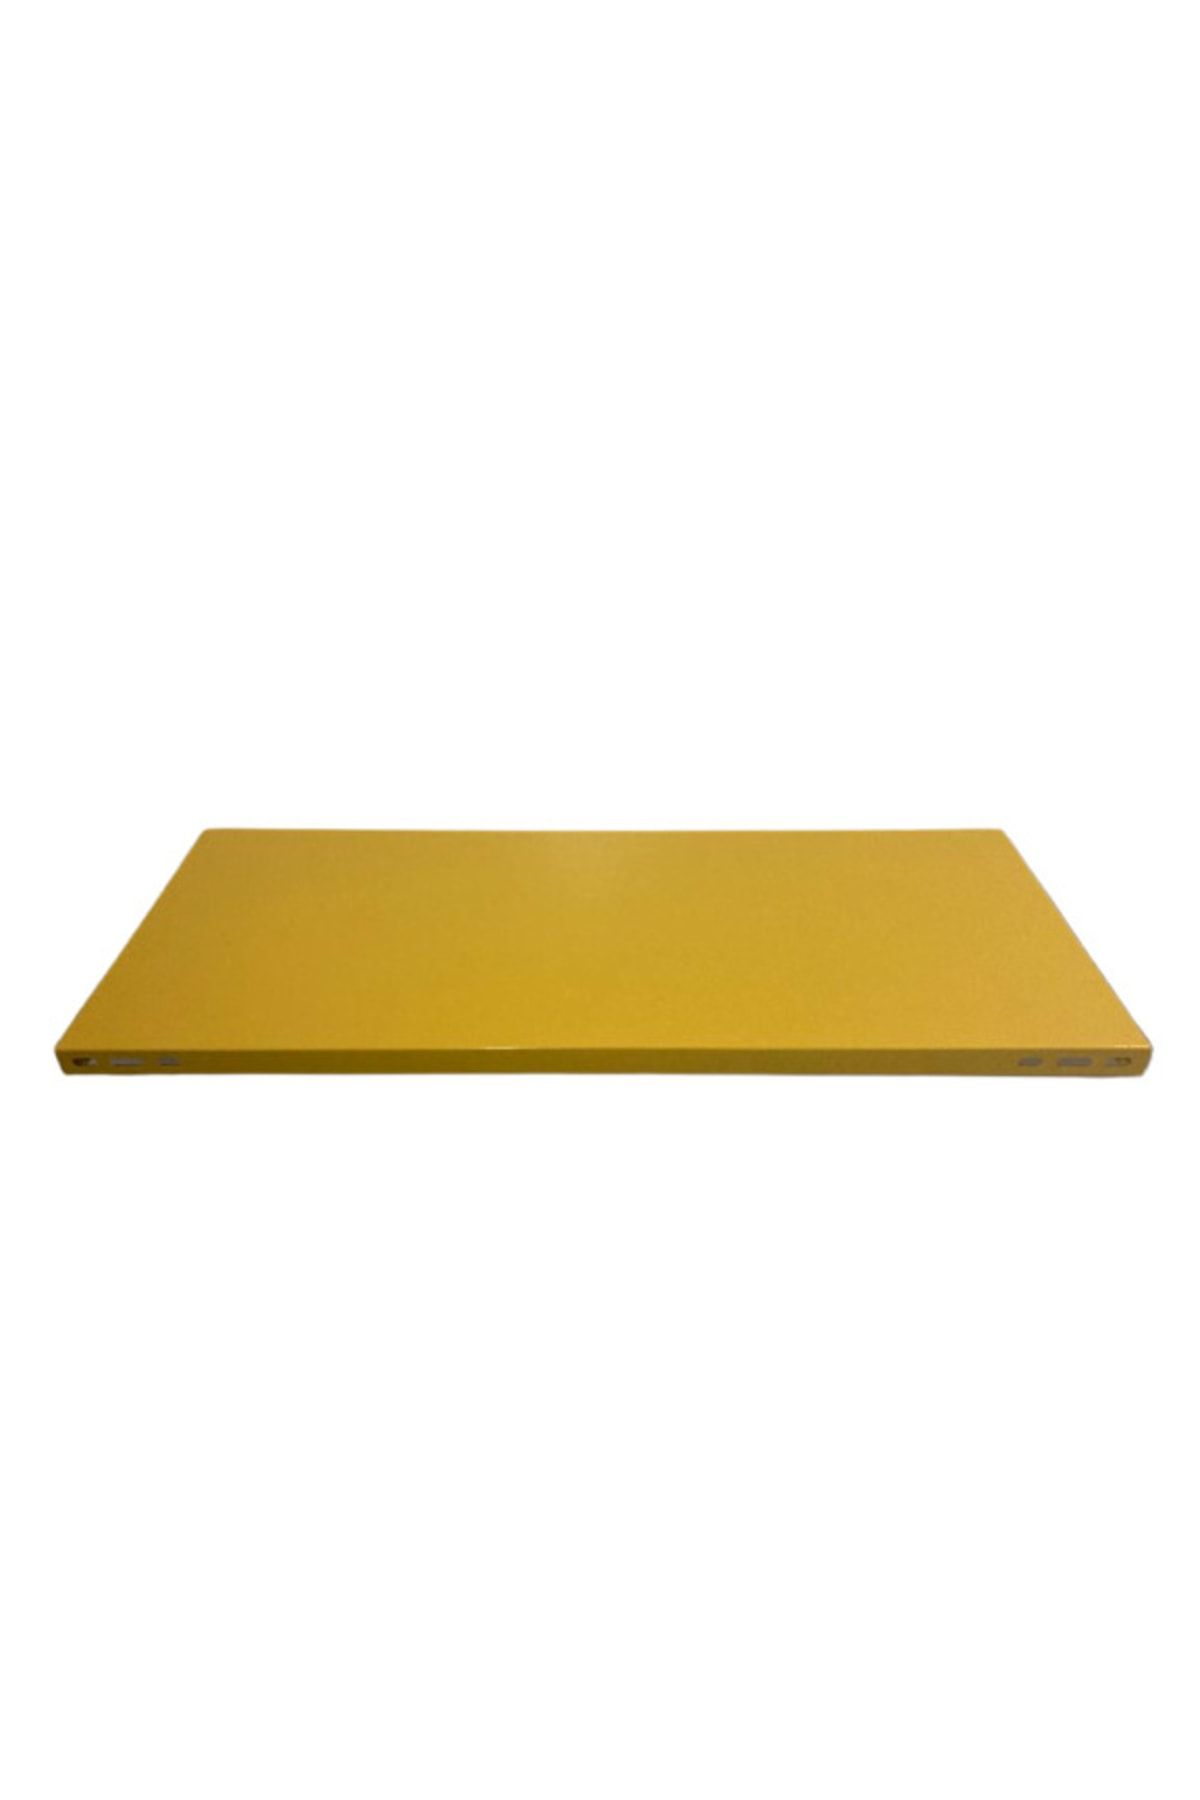 RafBurada ® Renkli Çelik Raf Tablası Mavı-0.70 Mm-43x93